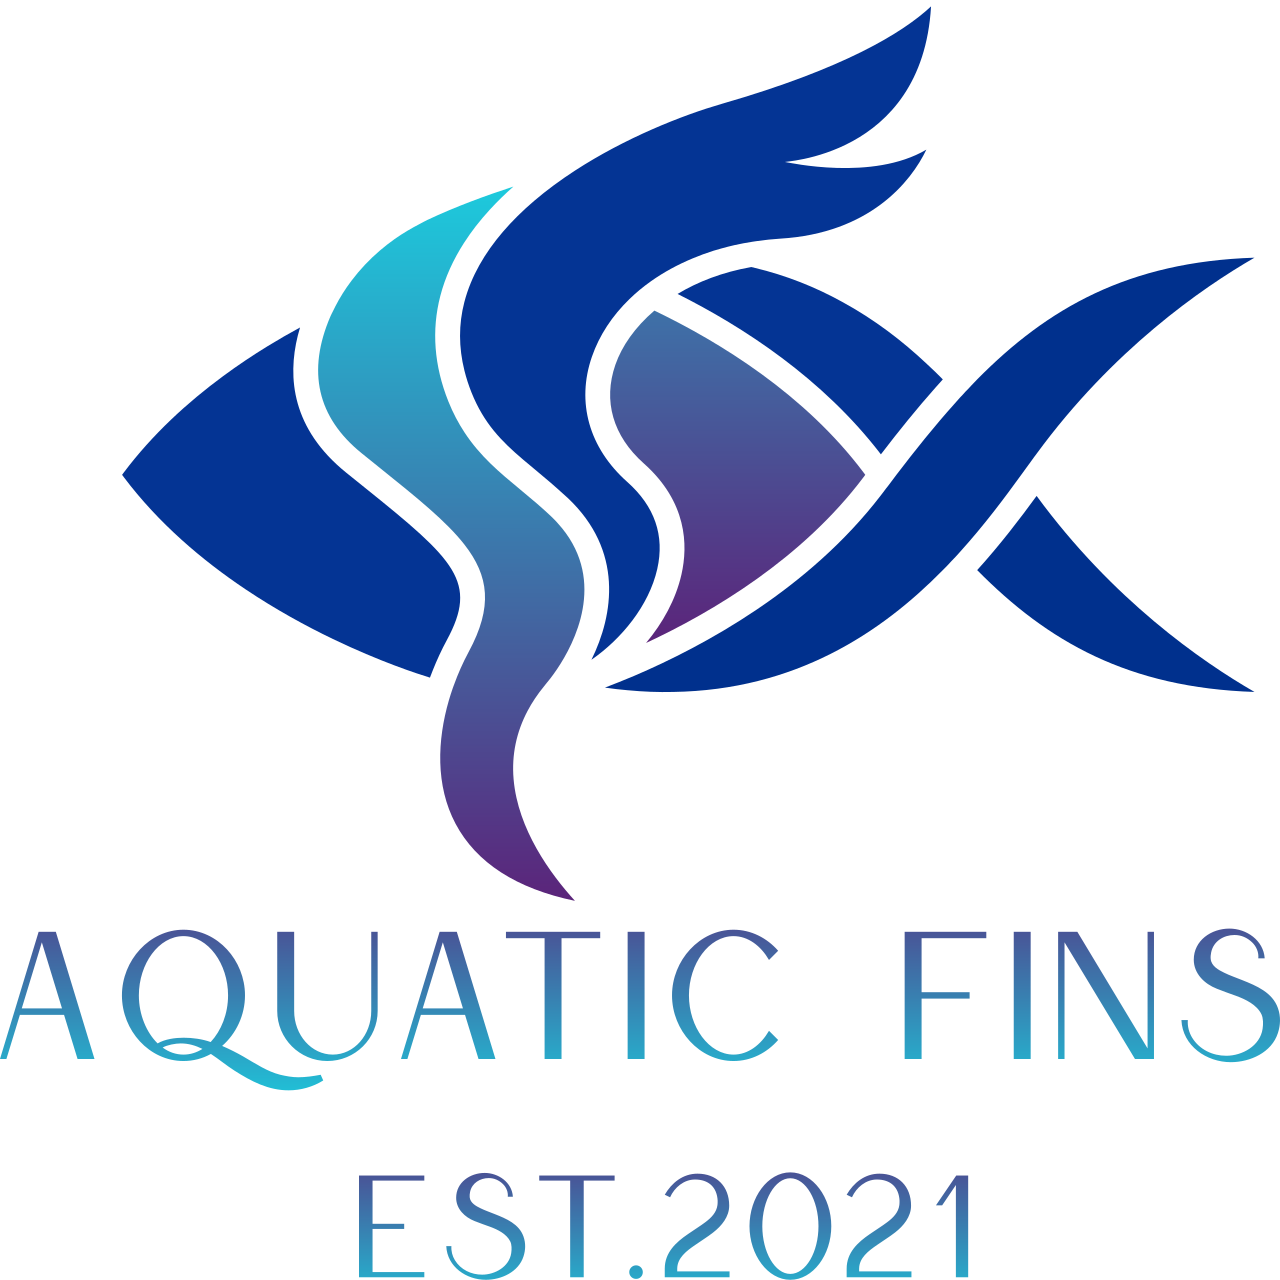 Aquatic fins 's logo